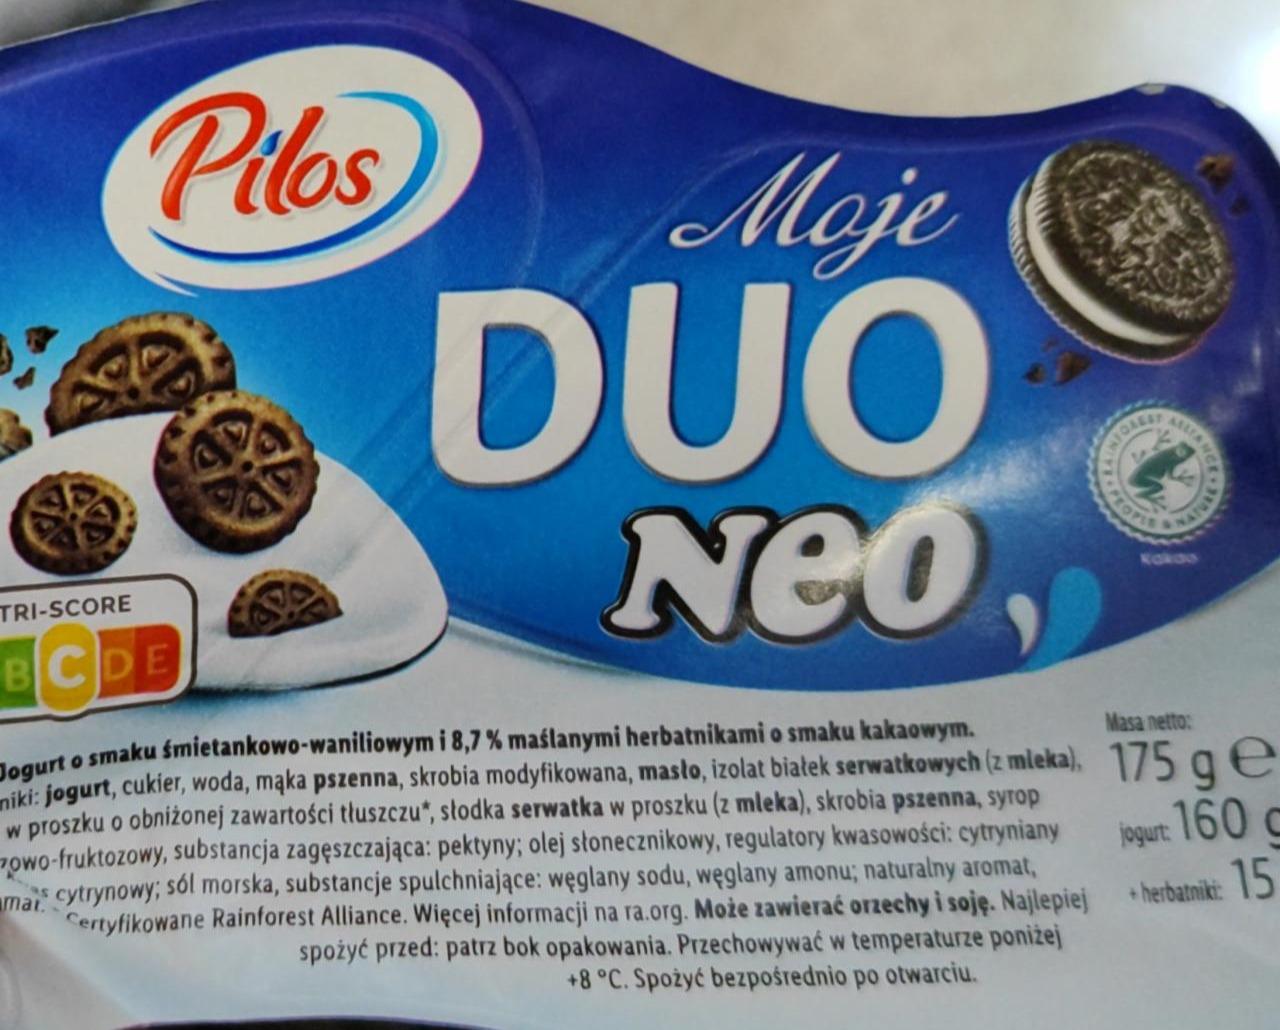 Zdjęcia - Jogurt o smaku śmietankowo- waniliowym Duo Neo Pilos